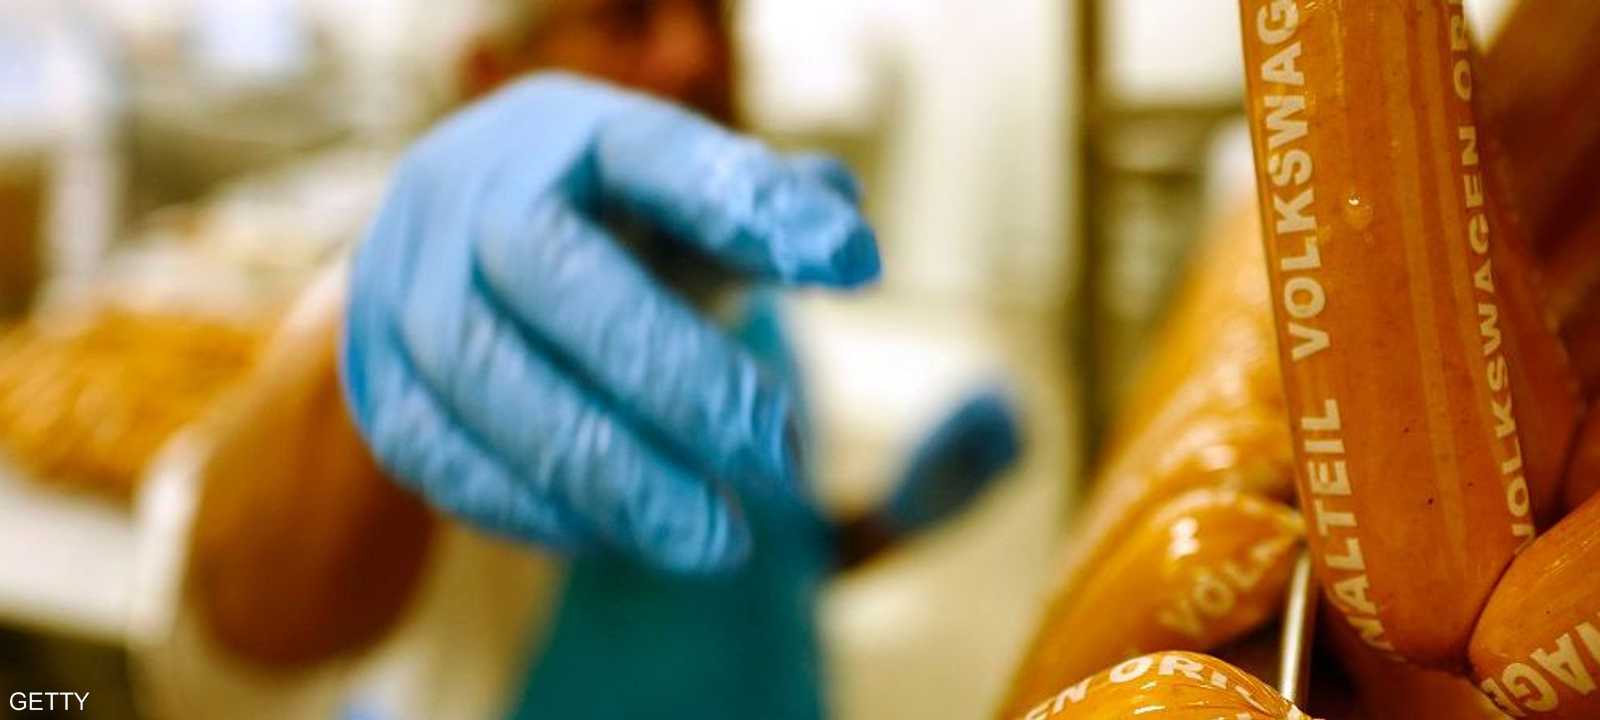 تنتج فولكس فاغن النقانق في مصنع سياراتها في مدينة فولفسبورغ.